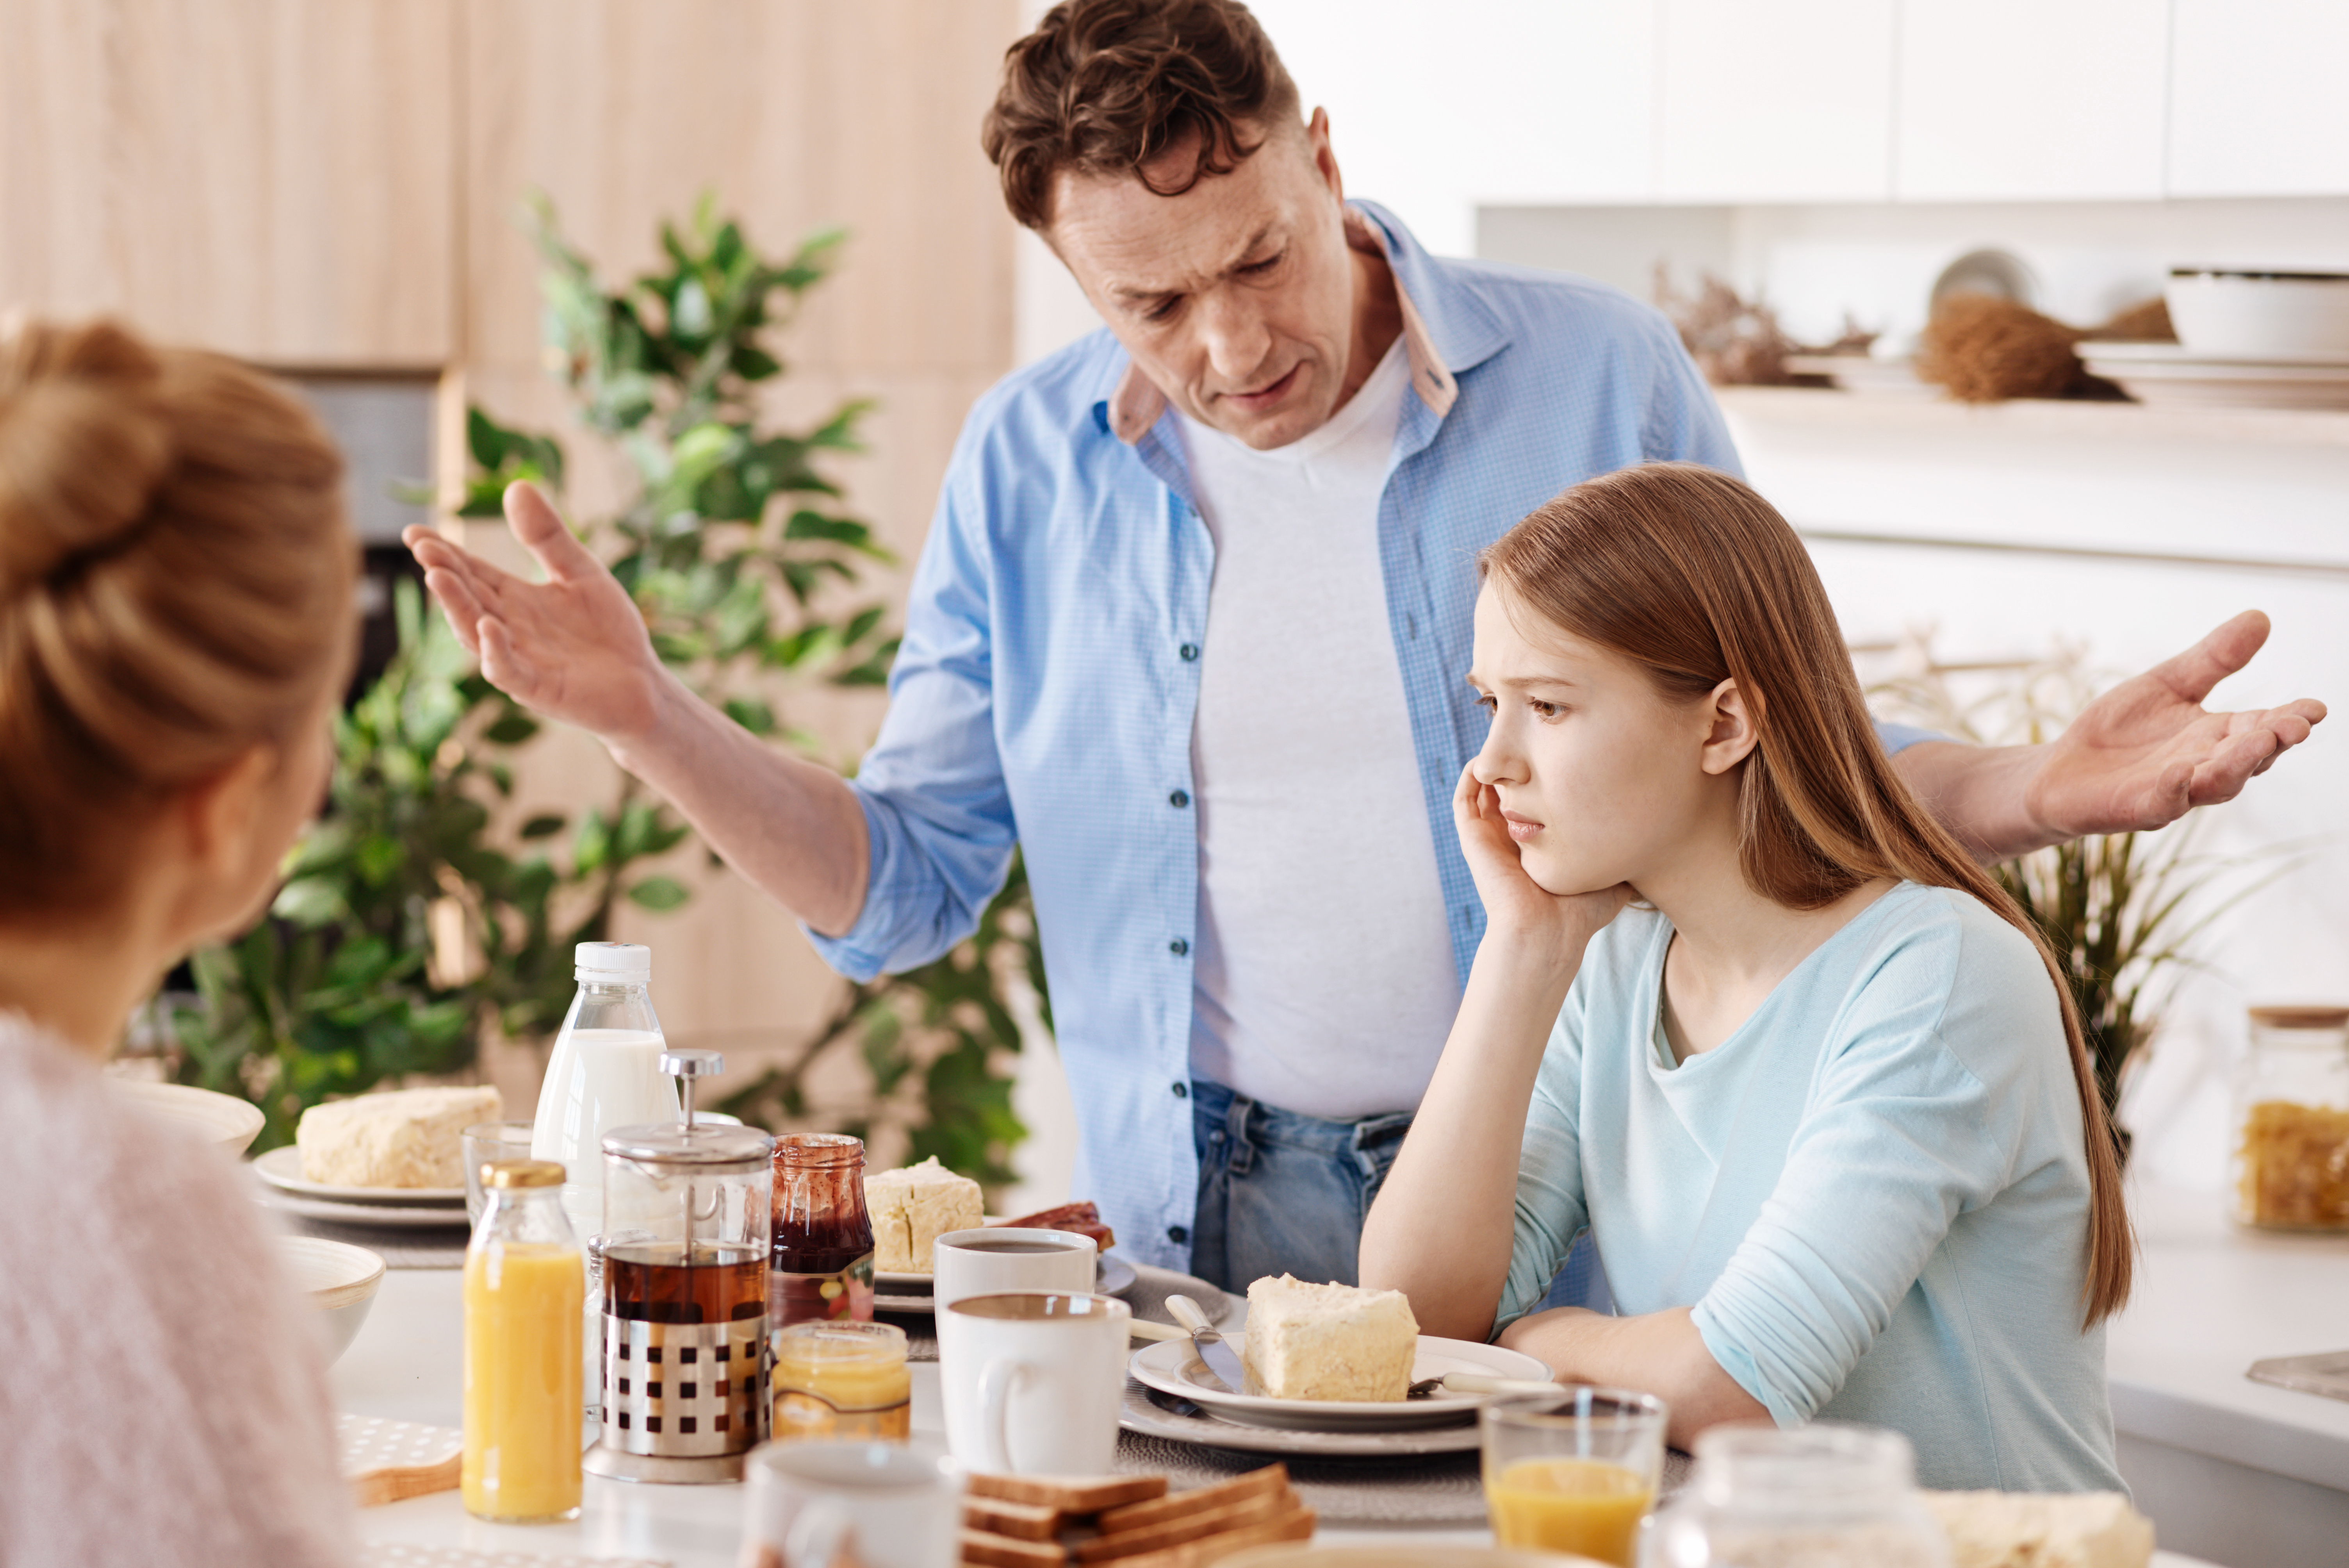 El padre ha intentado constantemente arreglar el comportamiento de su hija. | Foto: Shutterstock